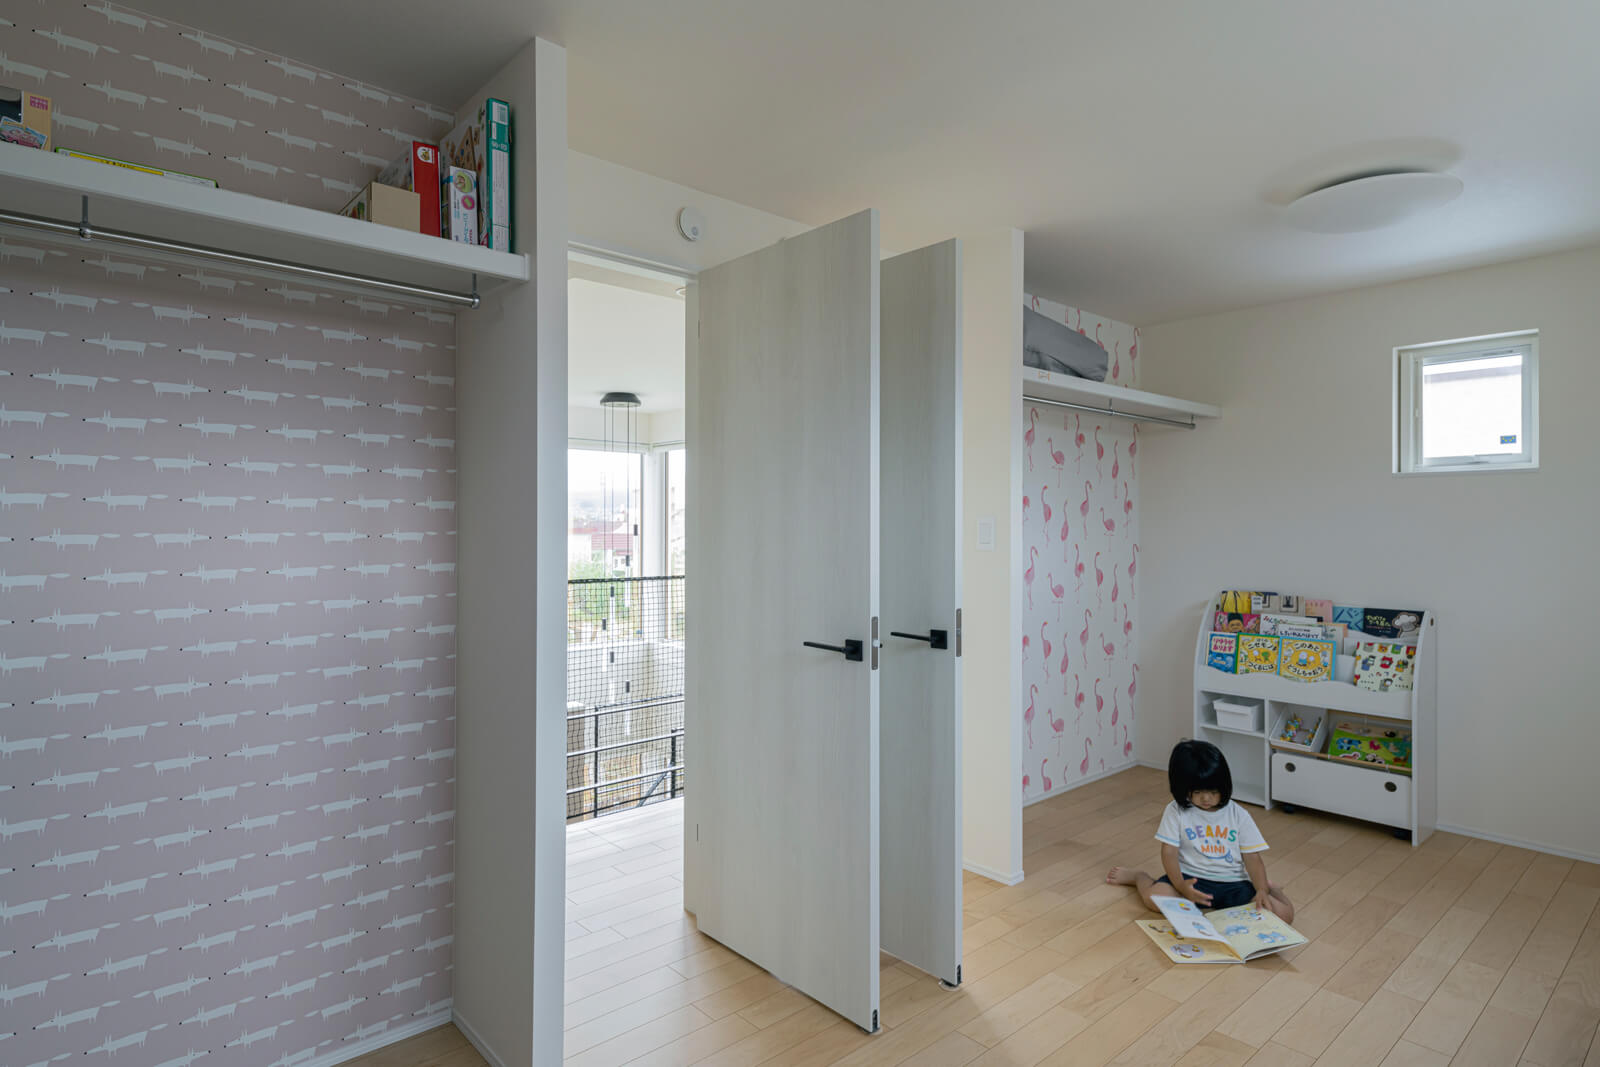 2階は将来、2室に分けることを想定して設えた子ども部屋のほか、洋室とトイレのみというシンプルな間取り